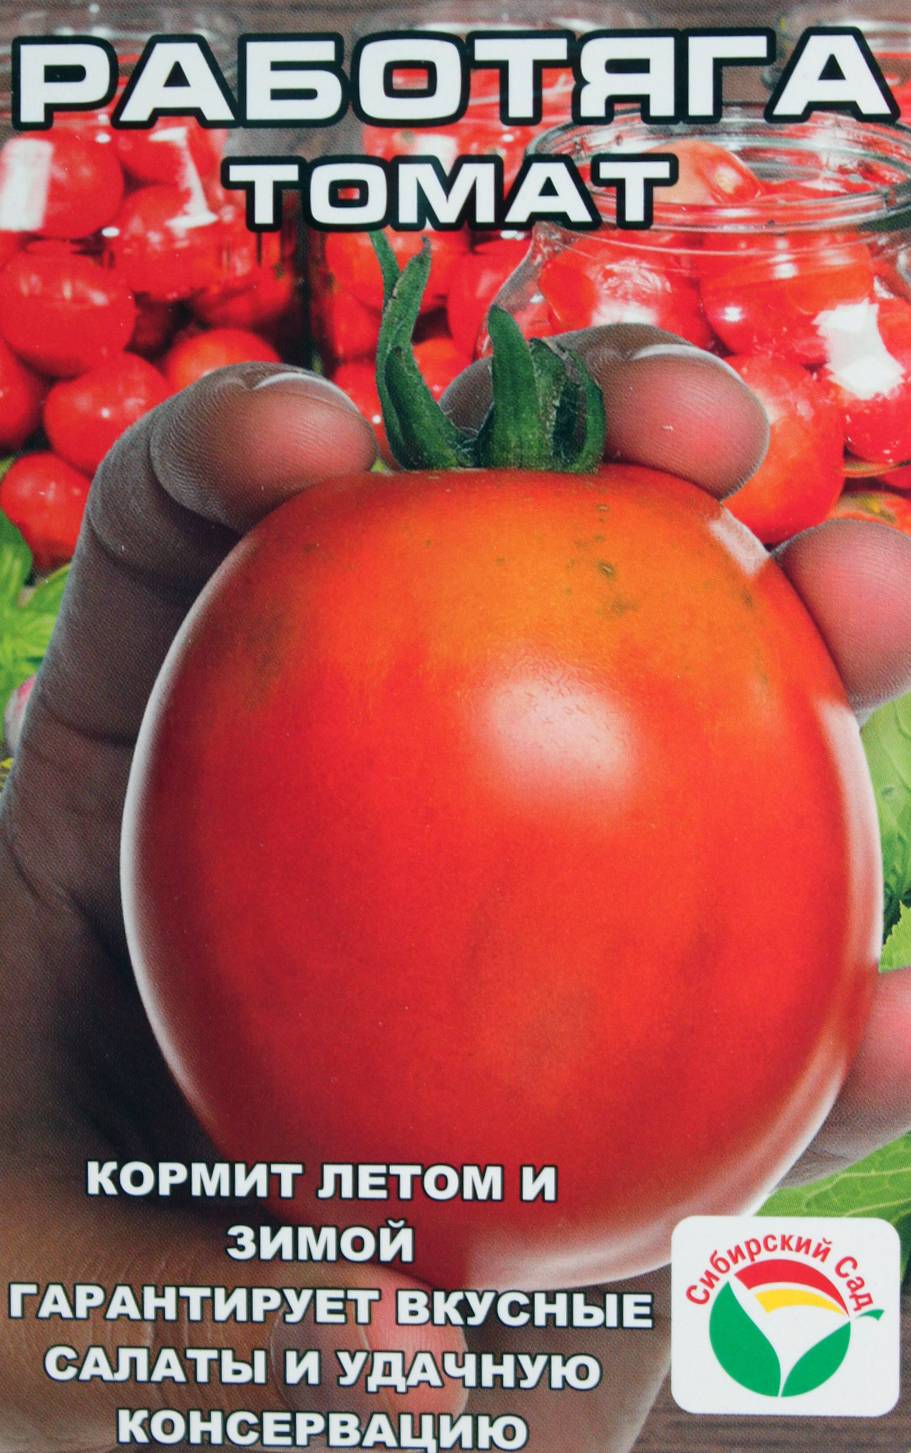 Лучшие сорта томатов: описание, характеристика, фото